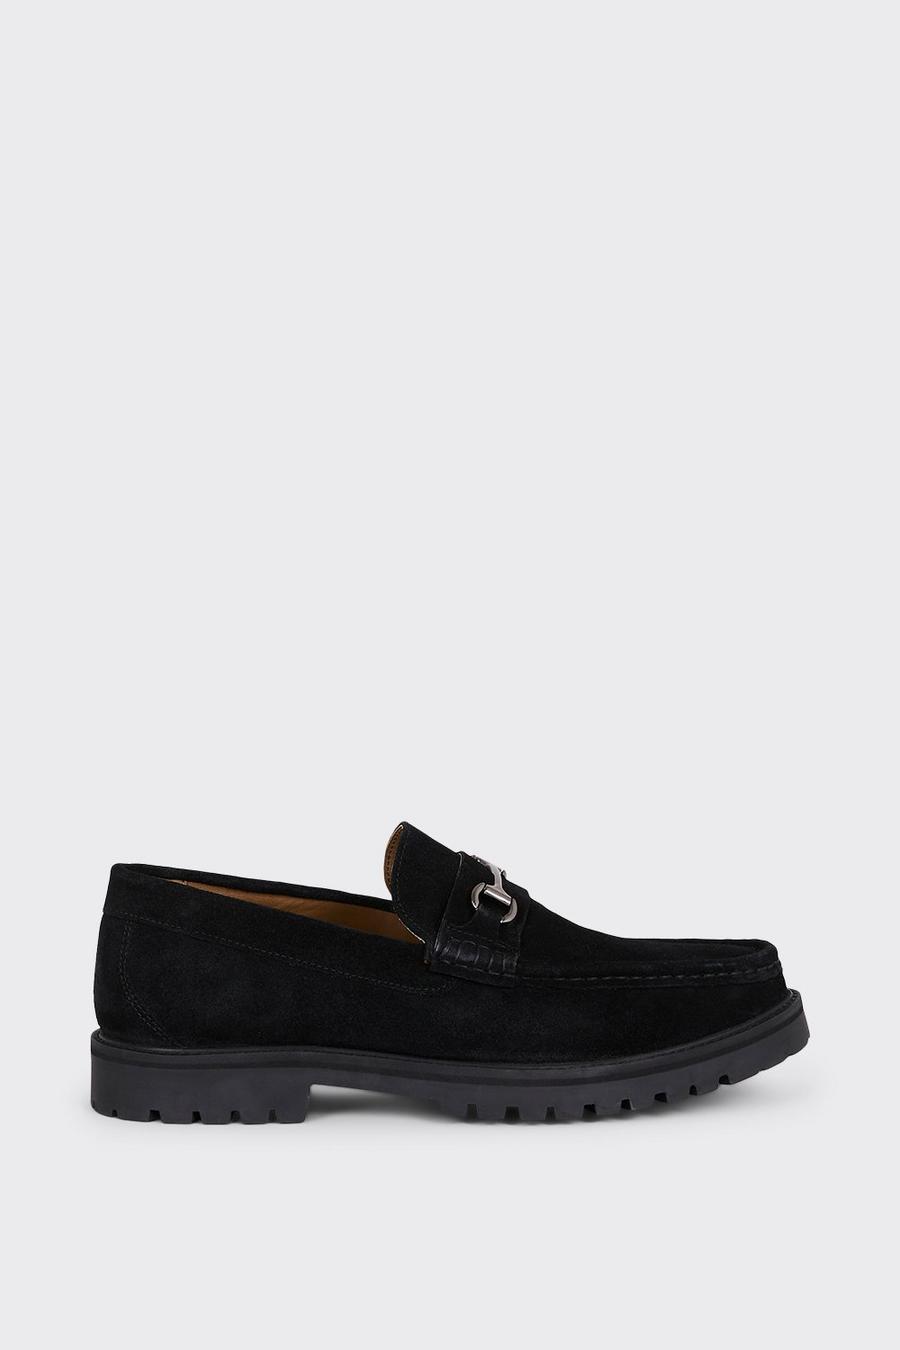 Black Suede Saddle Loafer Shoe